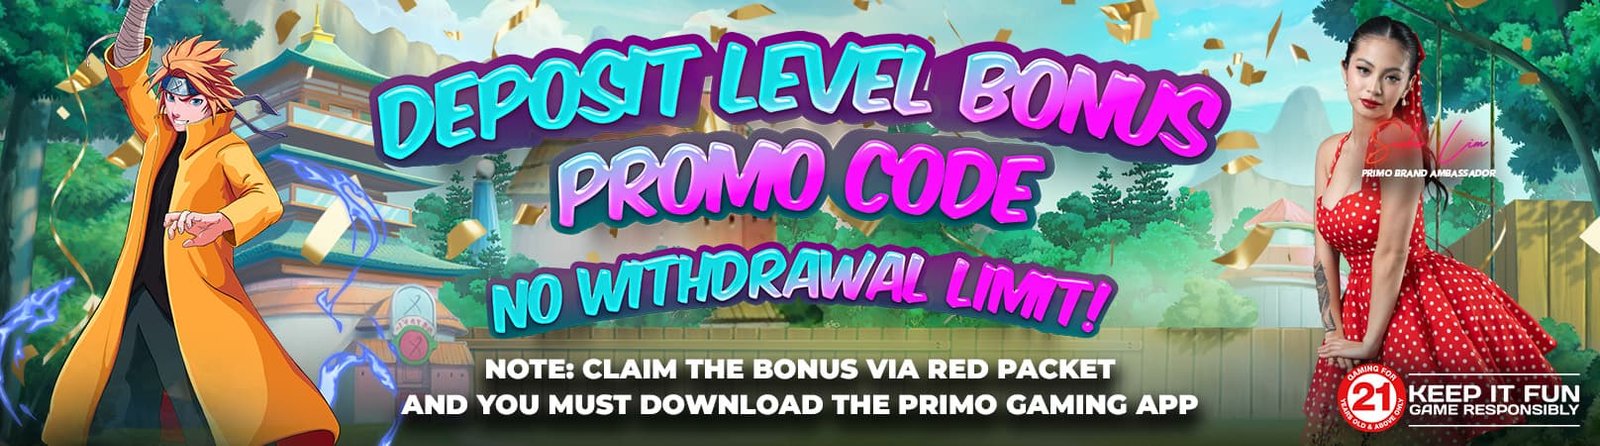 Deposit Level Bonus Promo Code